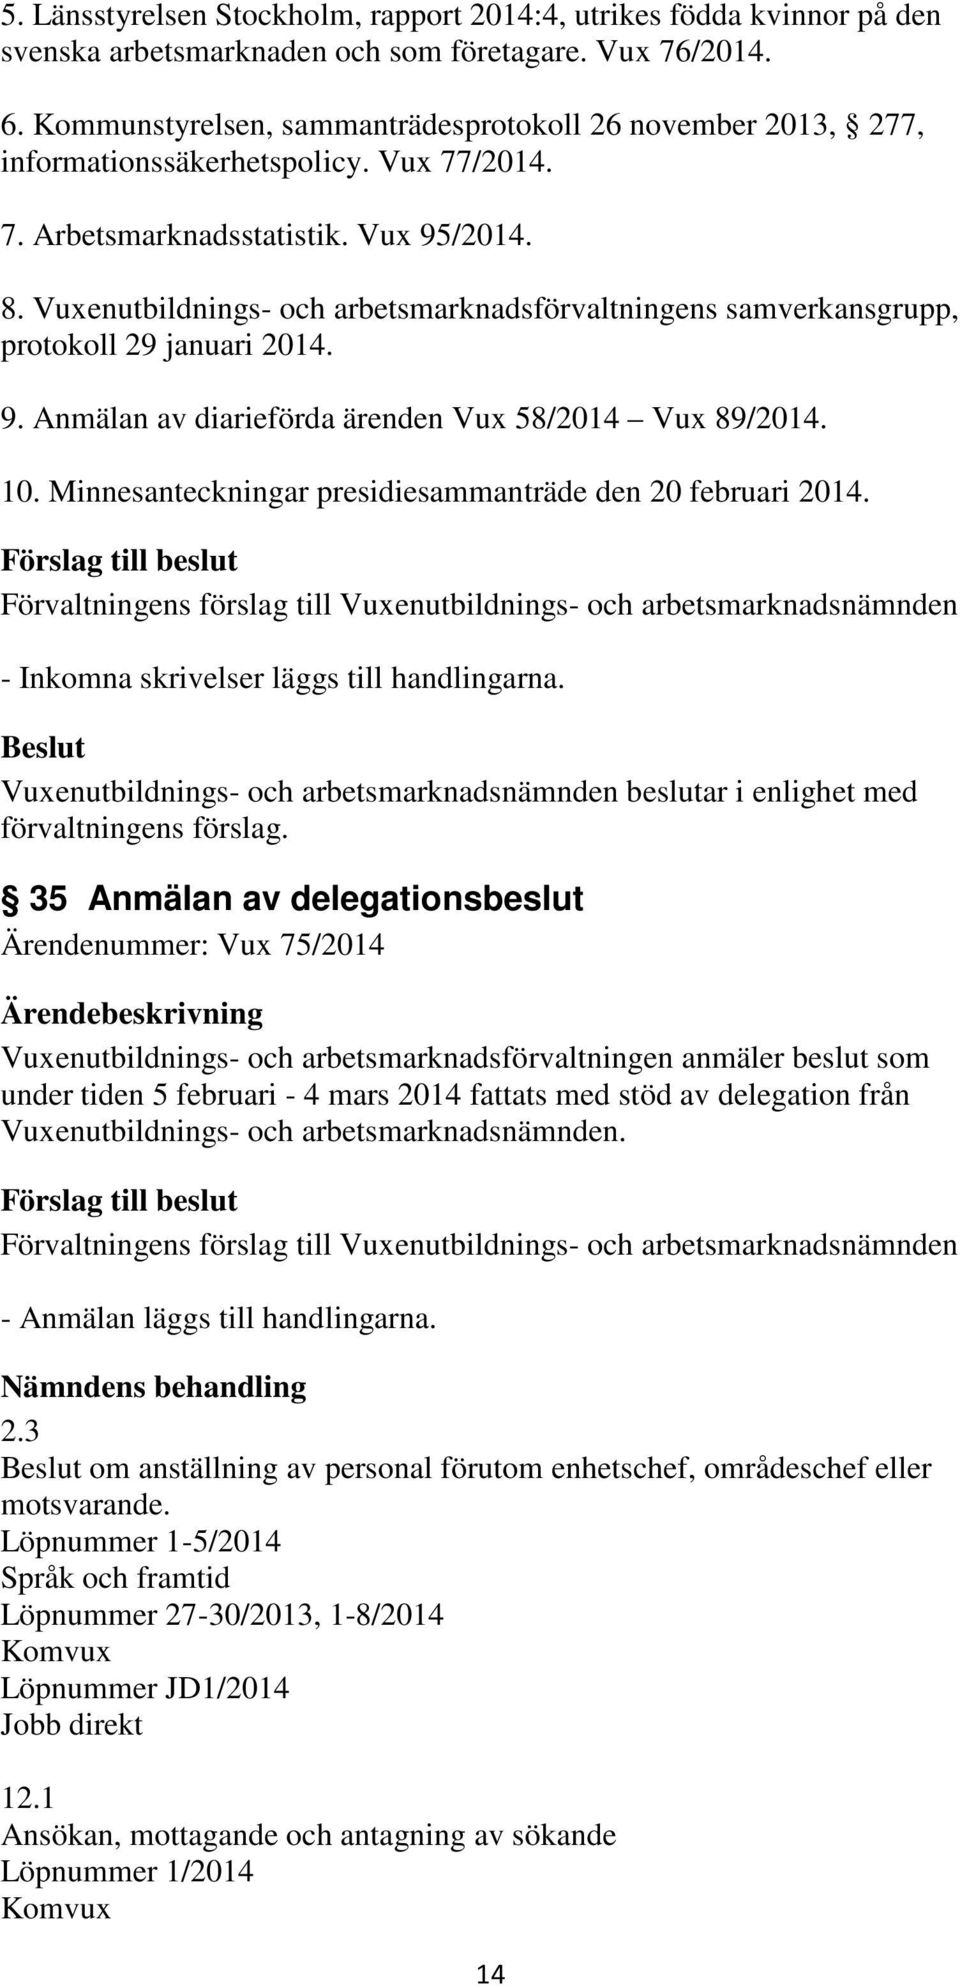 Vuxenutbildnings- och arbetsmarknadsförvaltningens samverkansgrupp, protokoll 29 januari 2014. 9. Anmälan av diarieförda ärenden Vux 58/2014 Vux 89/2014. 10.